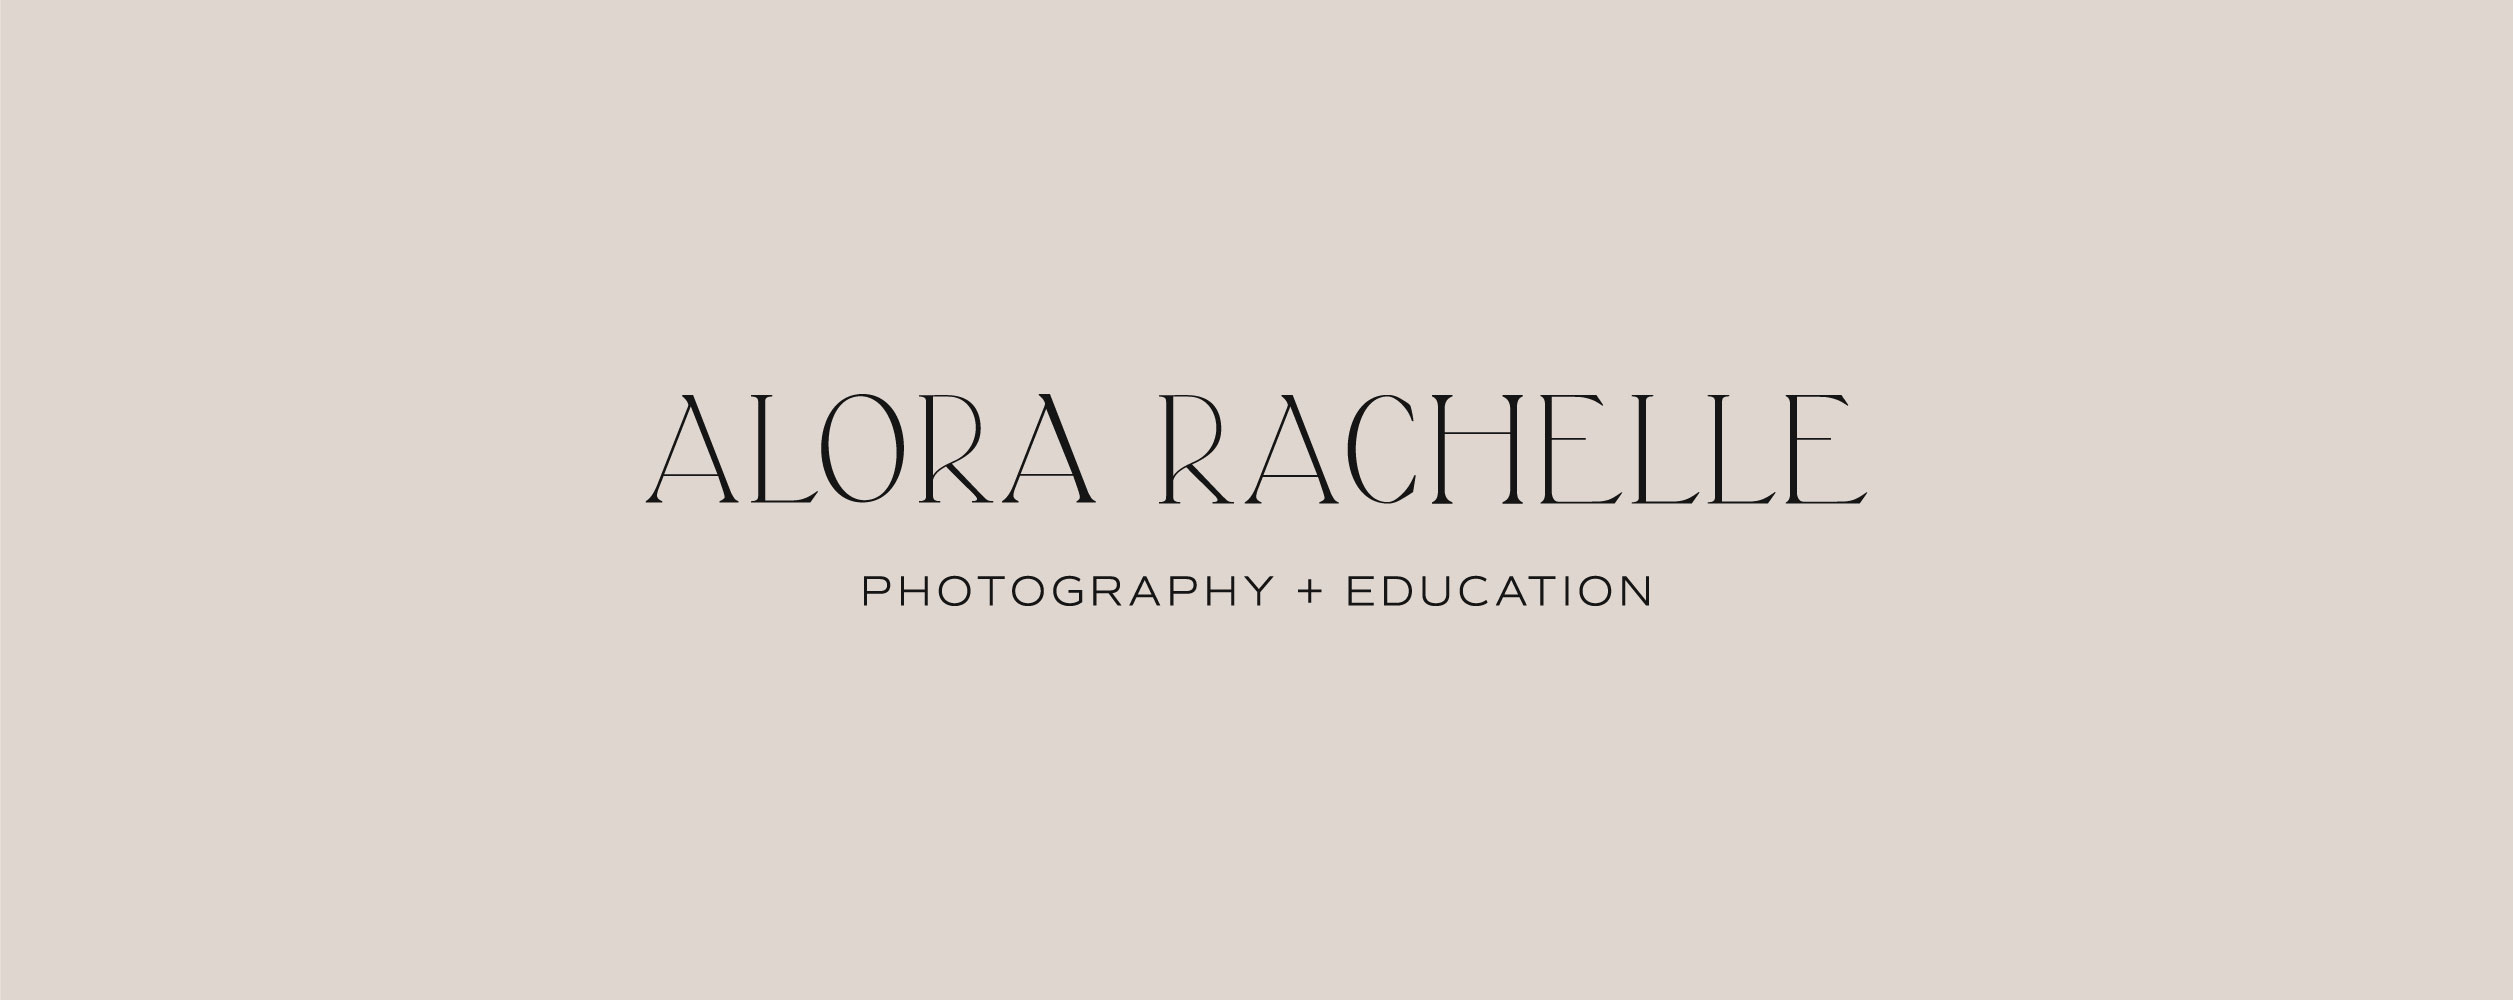 Nostalgic Brand and Website Design for Alora Rachelle